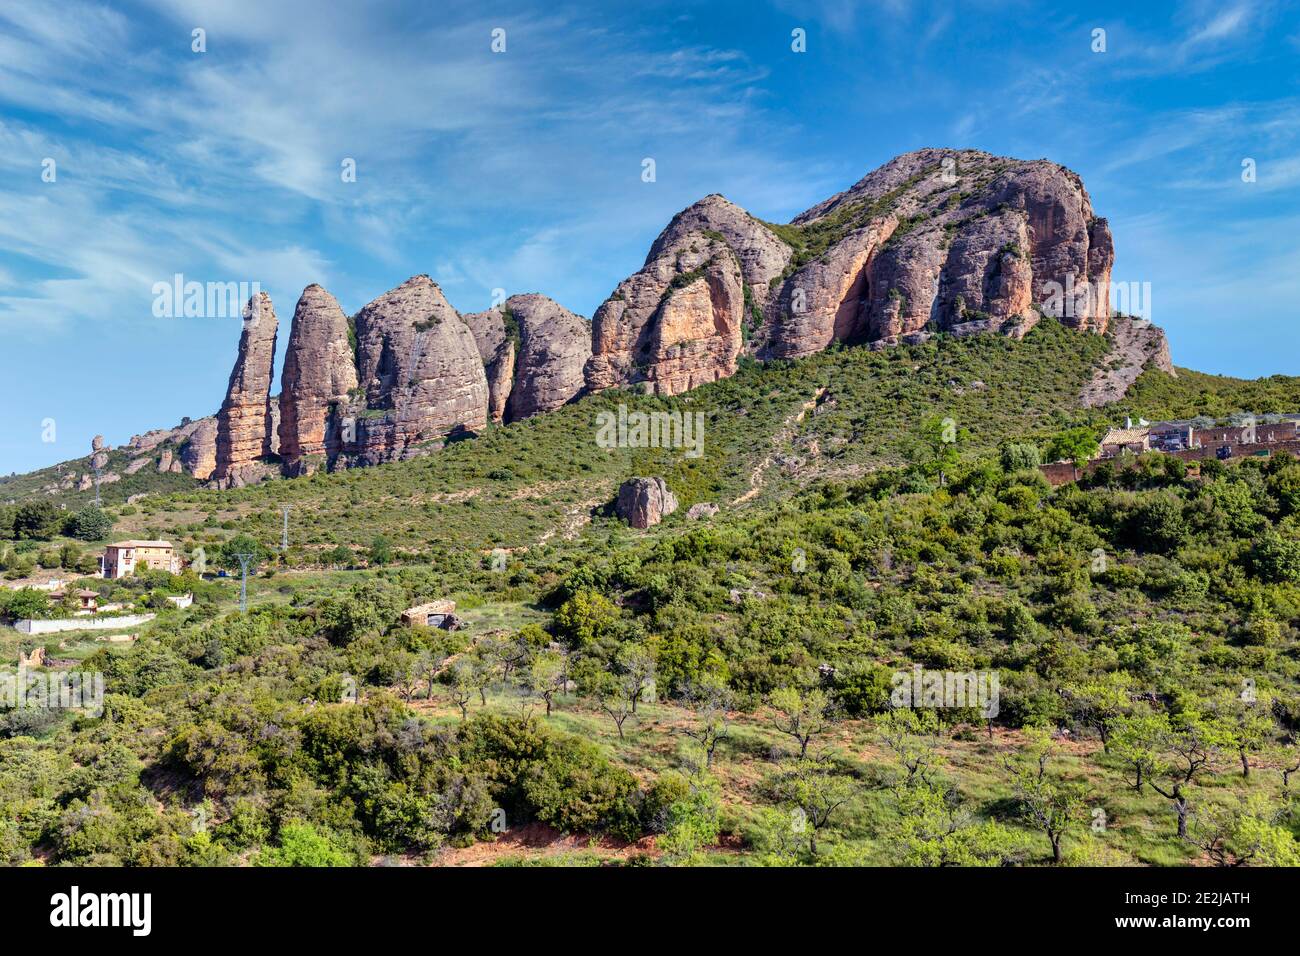 Conglomerados de formaciones rocosas de los Mallos de Riglos, provincia de Huesca, Aragón, España. Los Mallos de Riglos tienen aproximadamente 300 metros de altura. El son Foto de stock